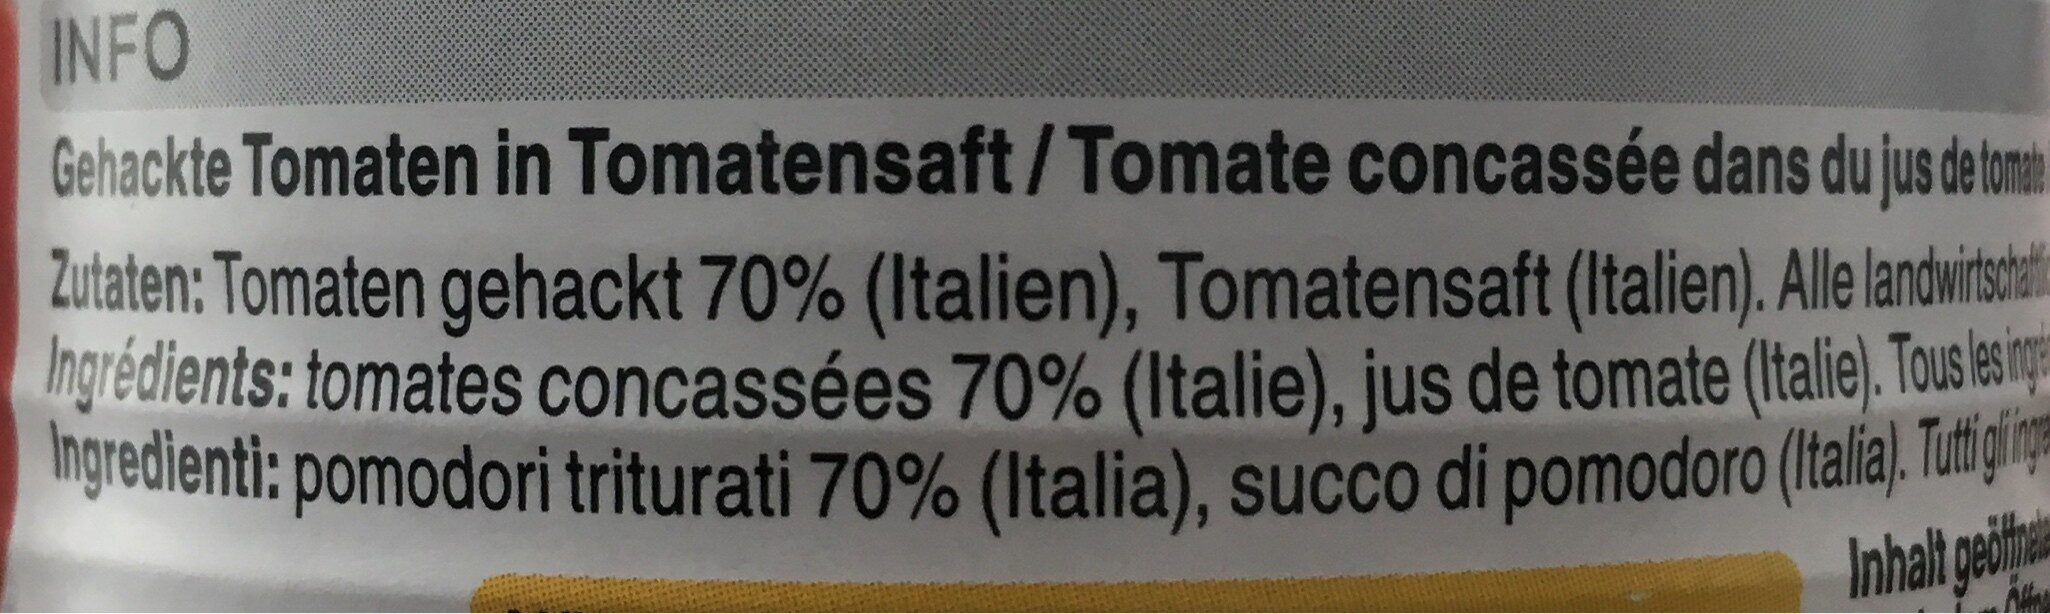 Pomodori Triturati - Ingredienti - fr